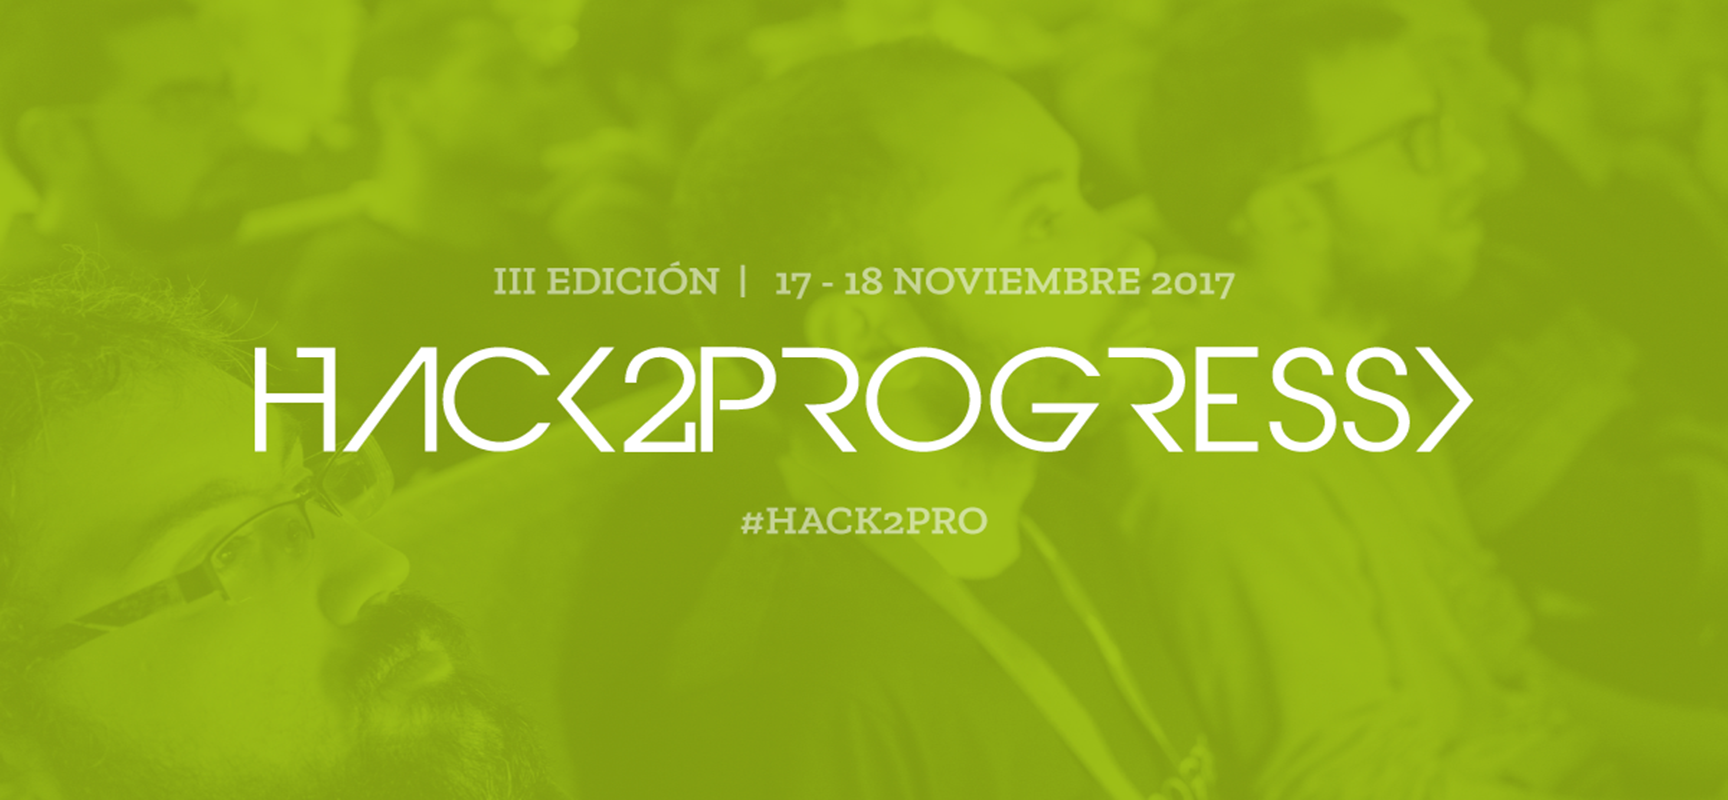 Hack2Progress, el proyecto de CIC para aportar valor a la sociedad